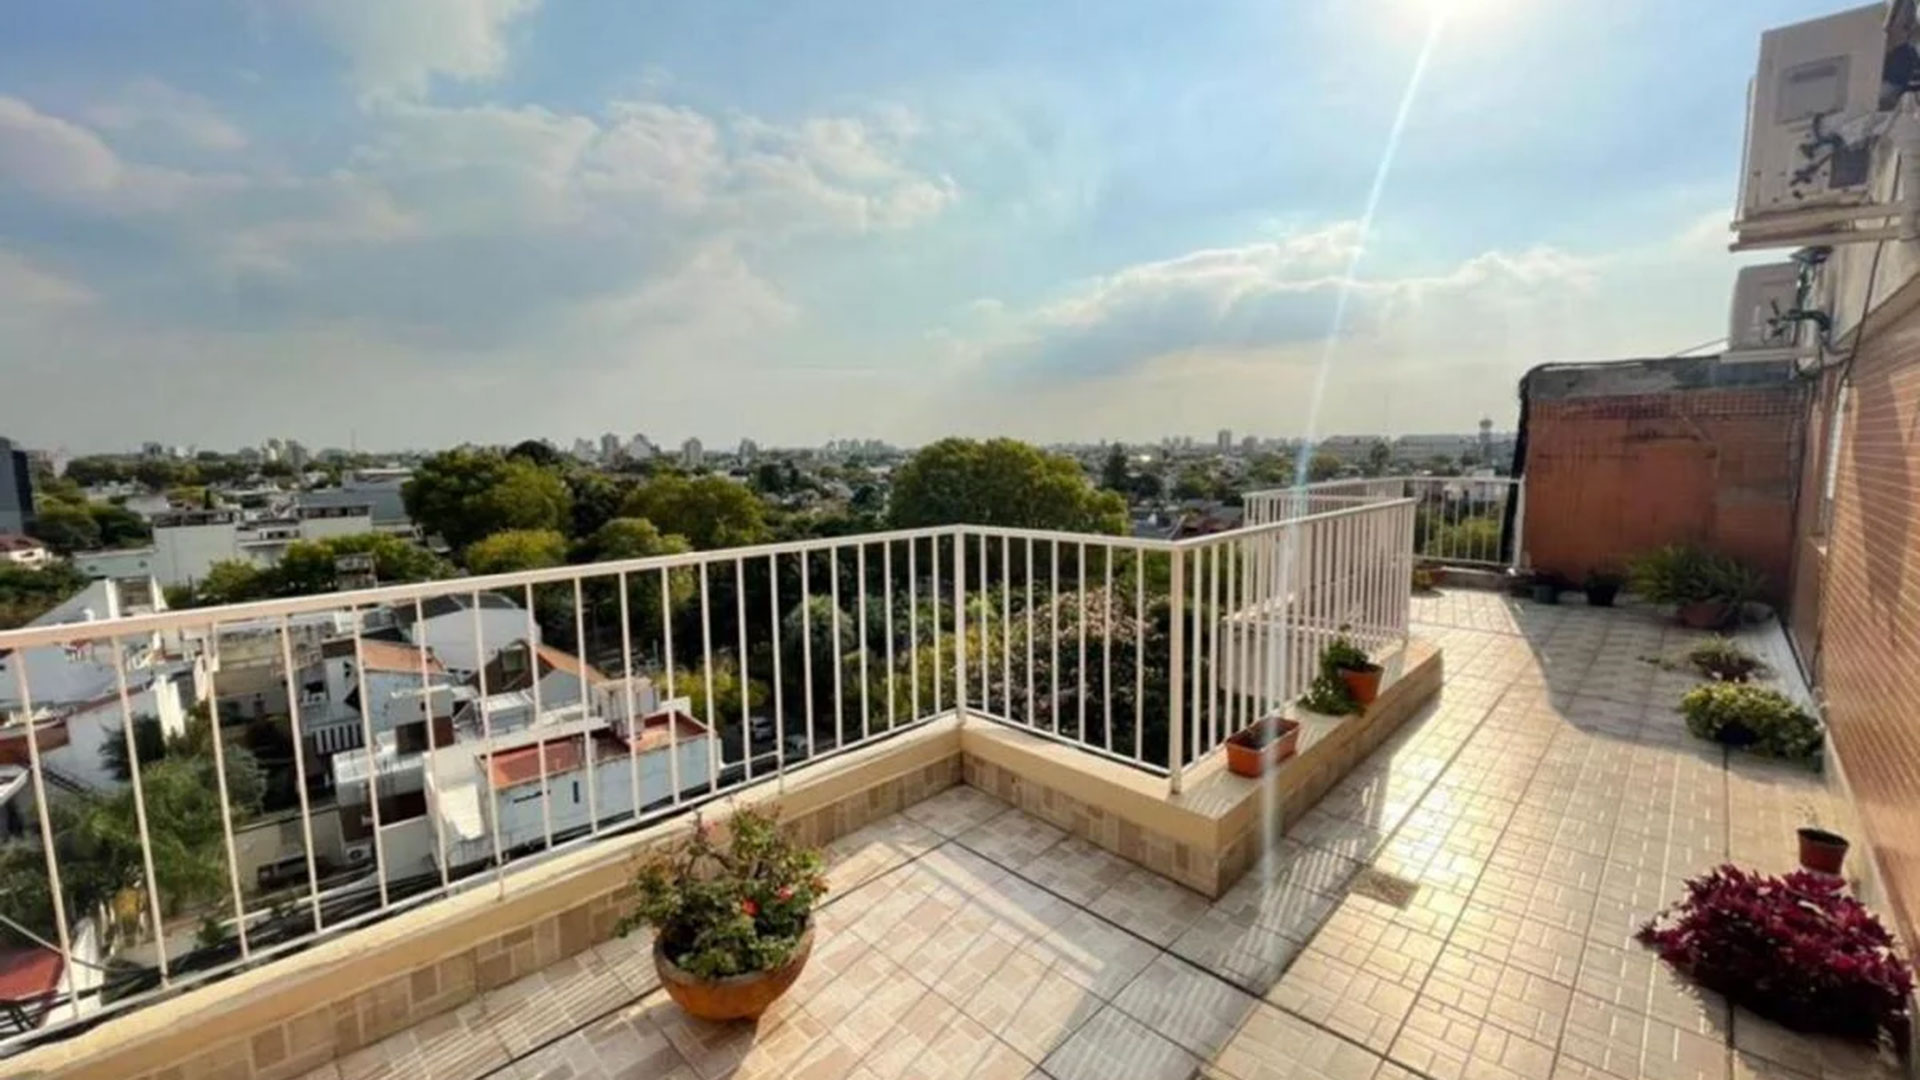 En Monte Castro, con 65 m2 se vende un dos ambientes en USD 86.000 que incluye balcón terraza propia, espacio que se valora mucho más desde que llegó la pandemia